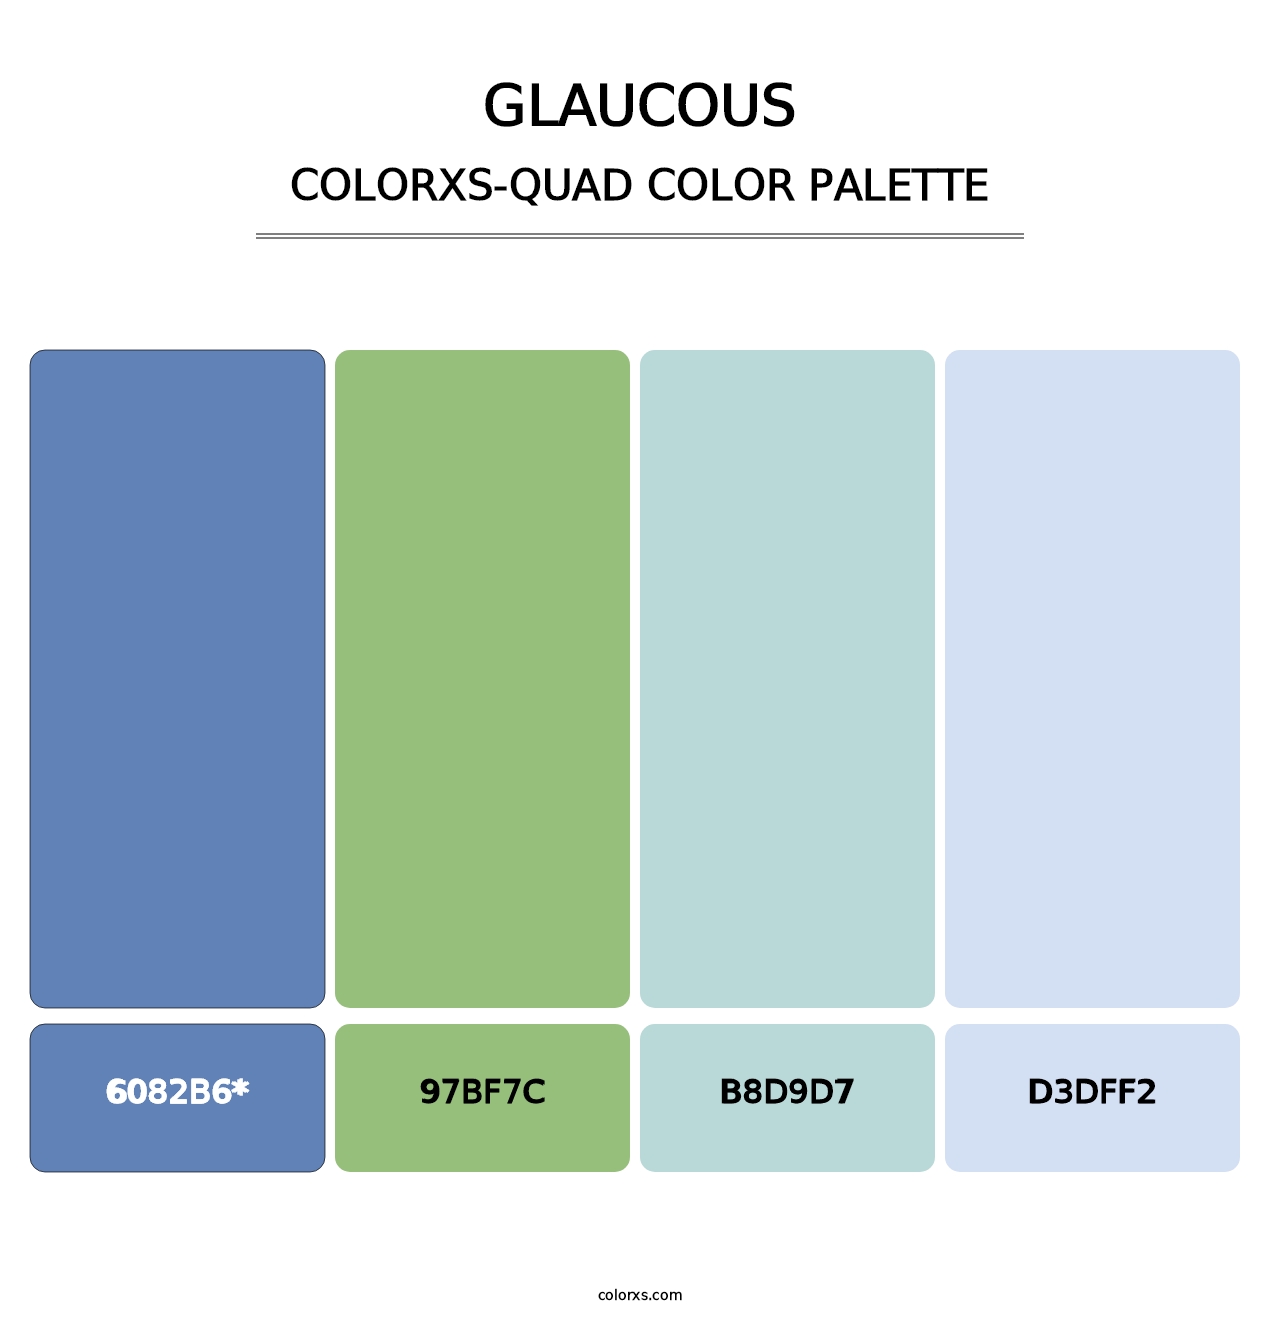 Glaucous - Colorxs Quad Palette